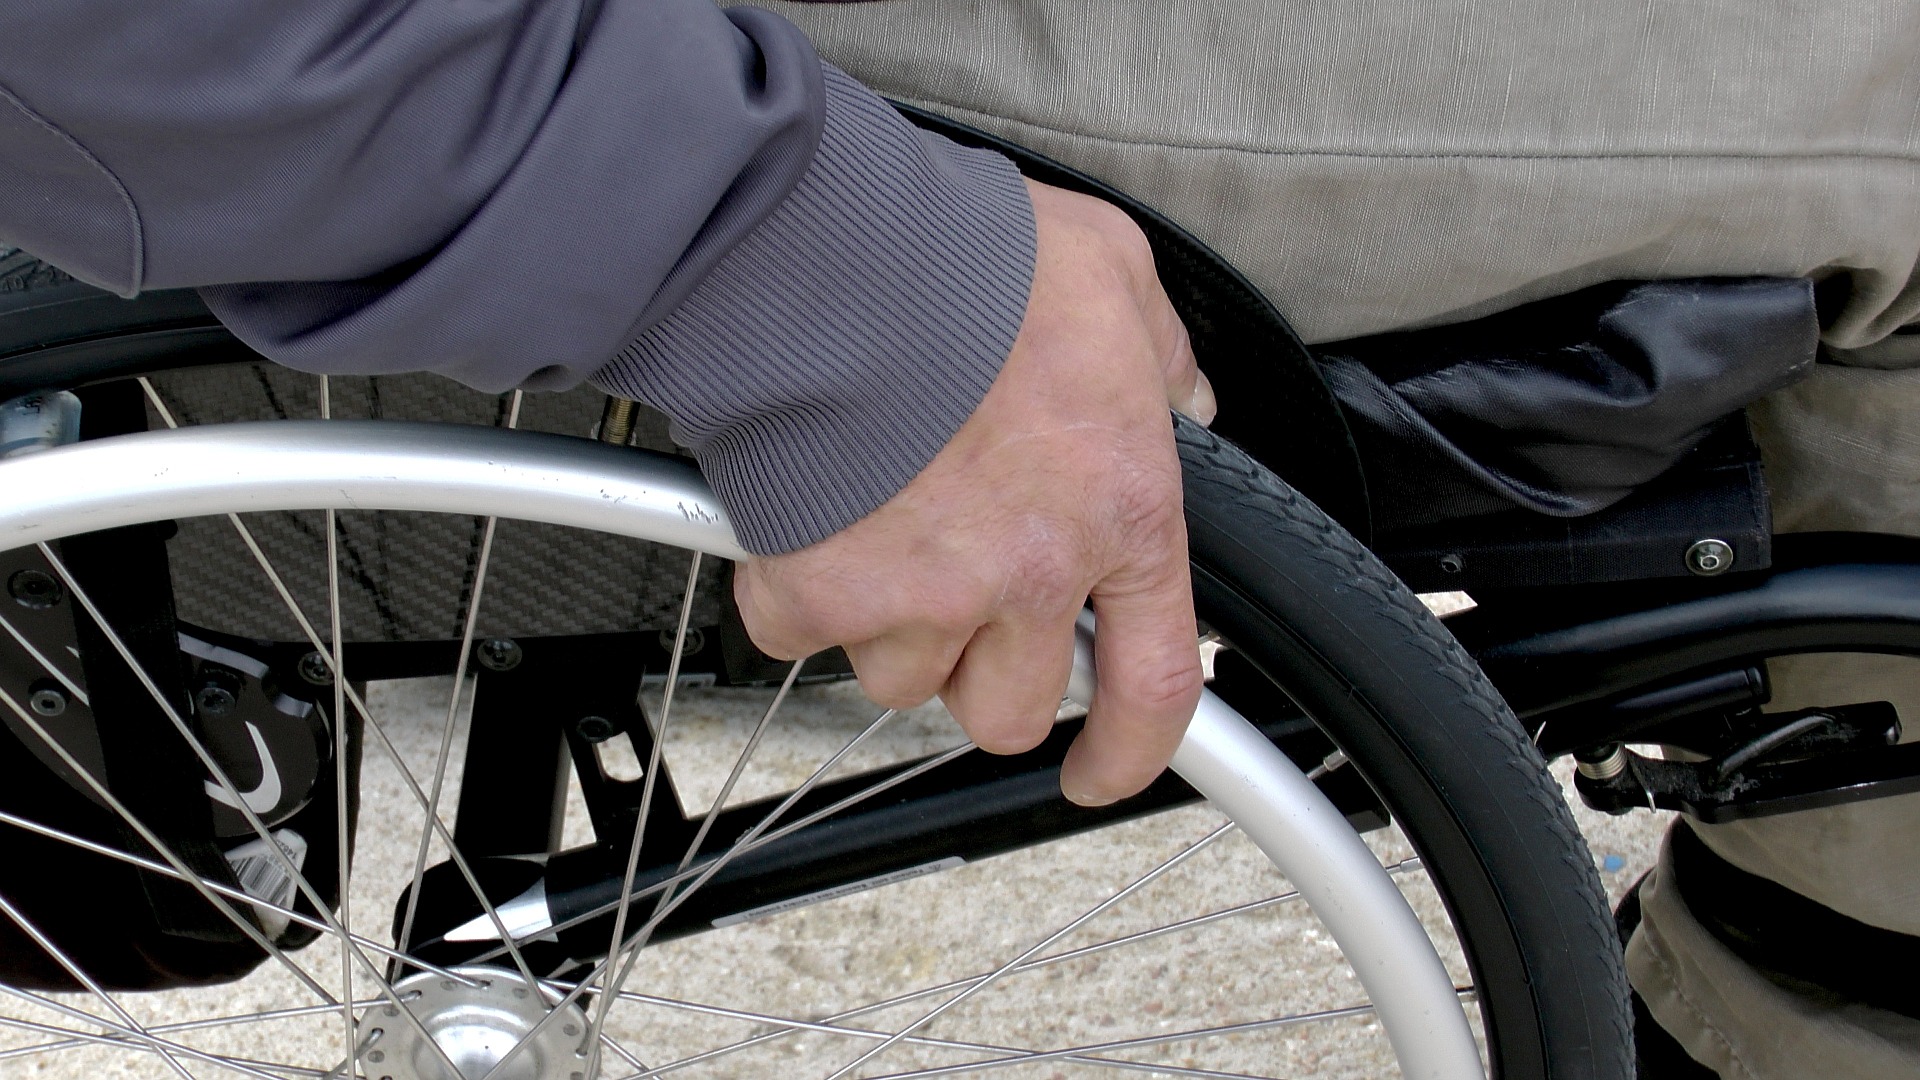 Rollstuhl (c) Bild von Sabine GENET auf Pixabay